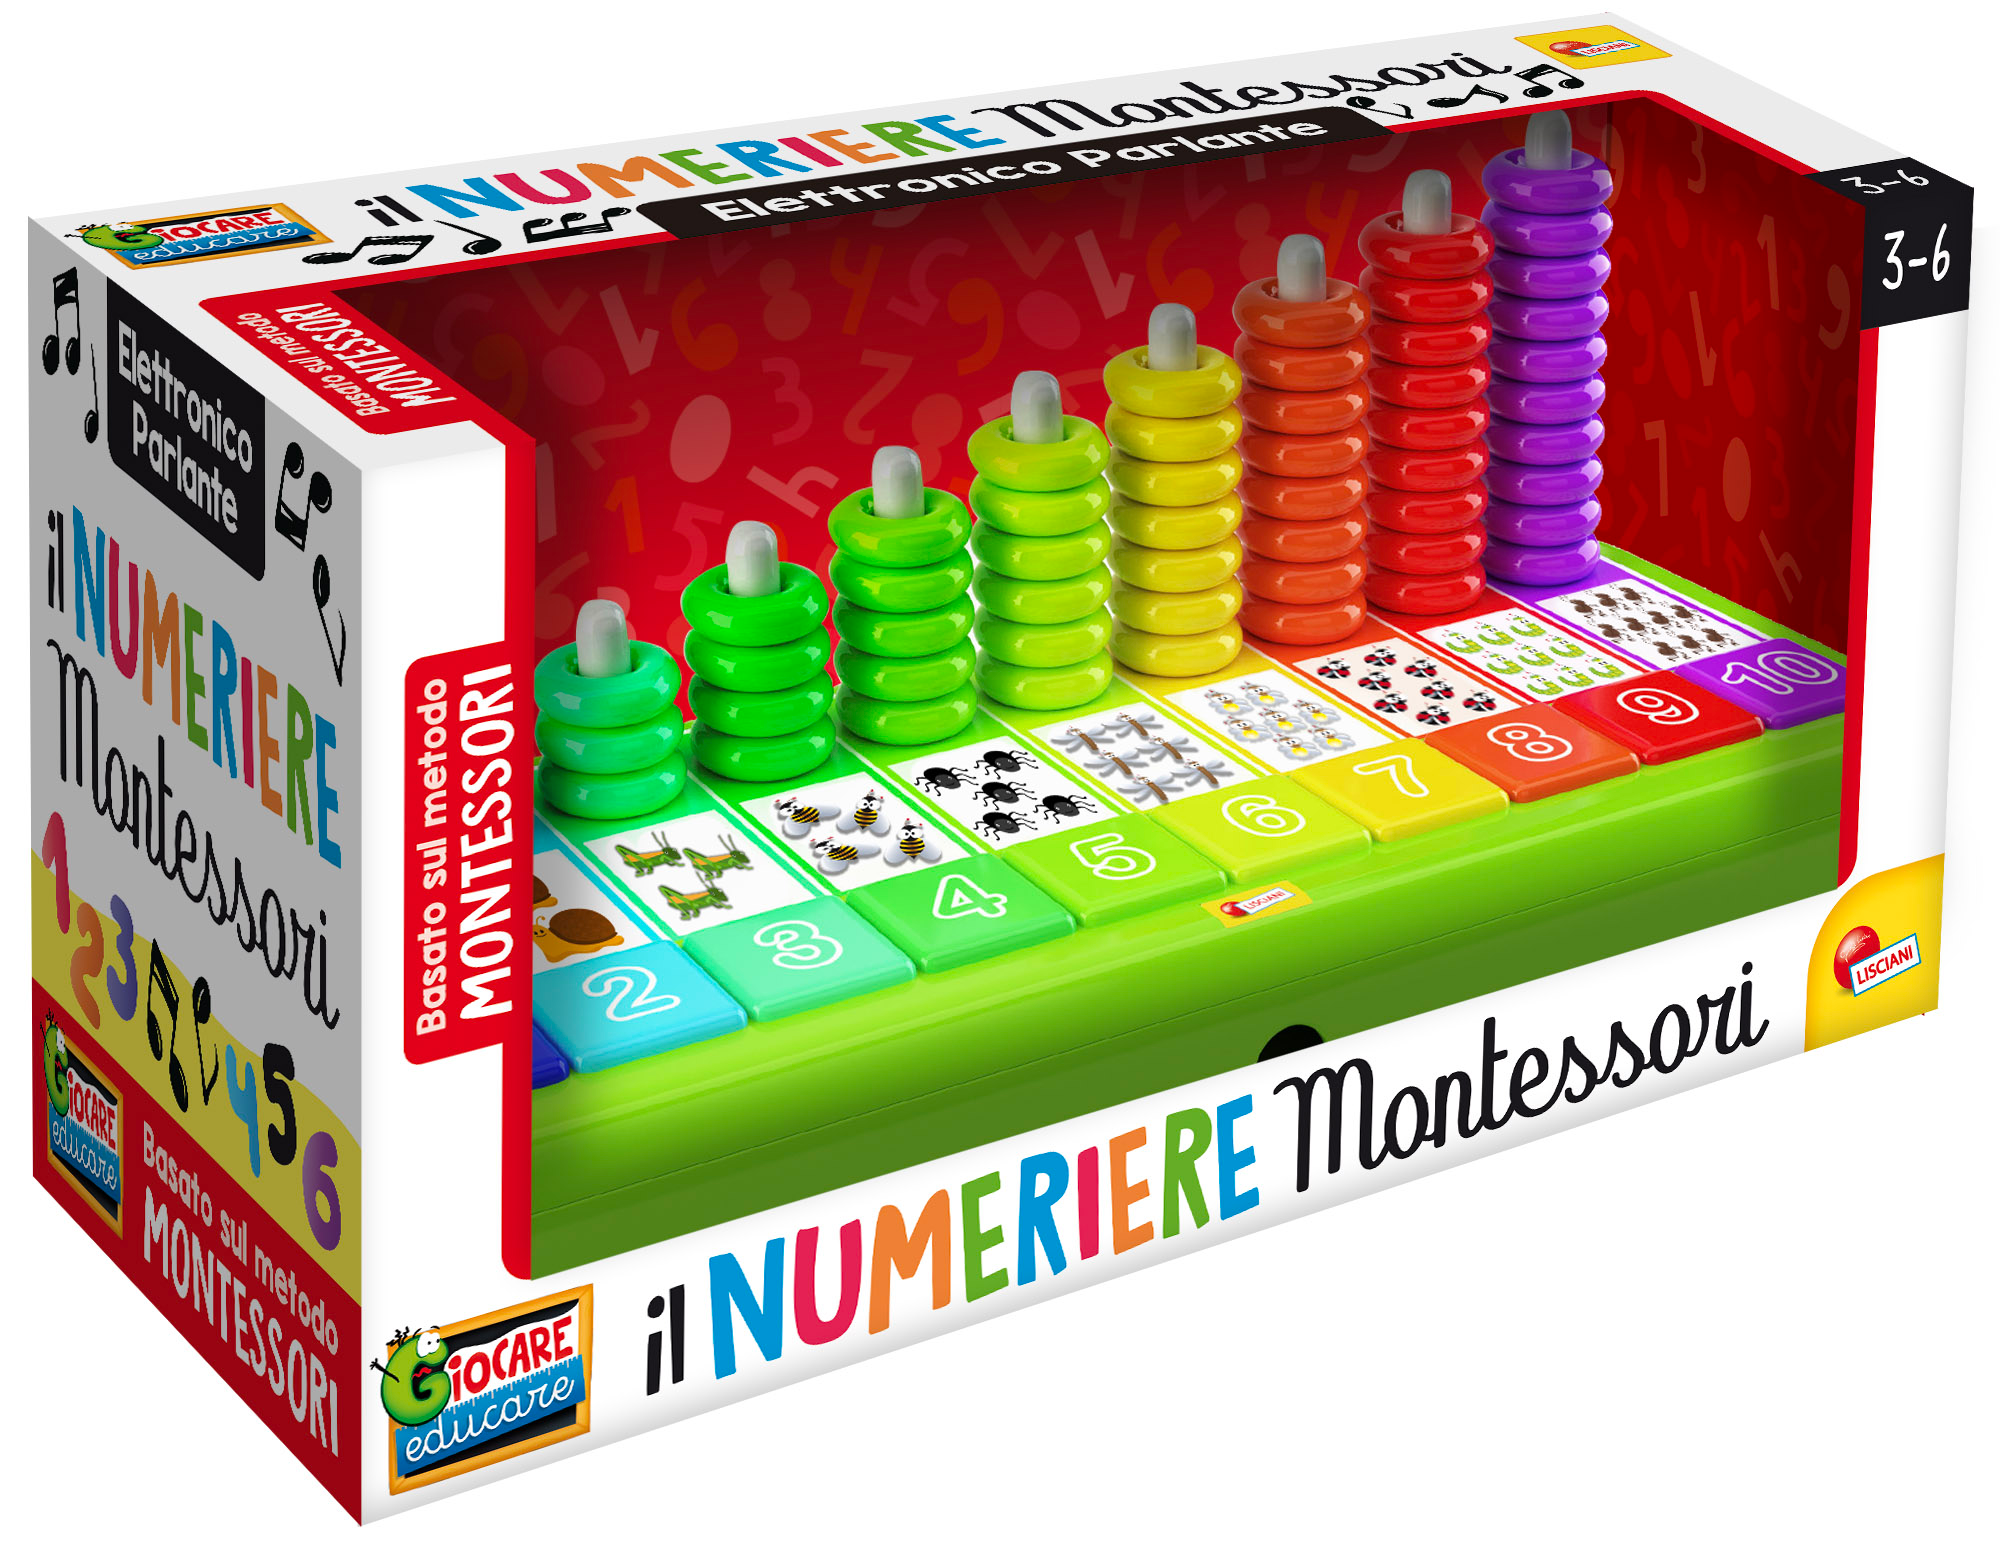 Montessori numeriere - LISCIANI